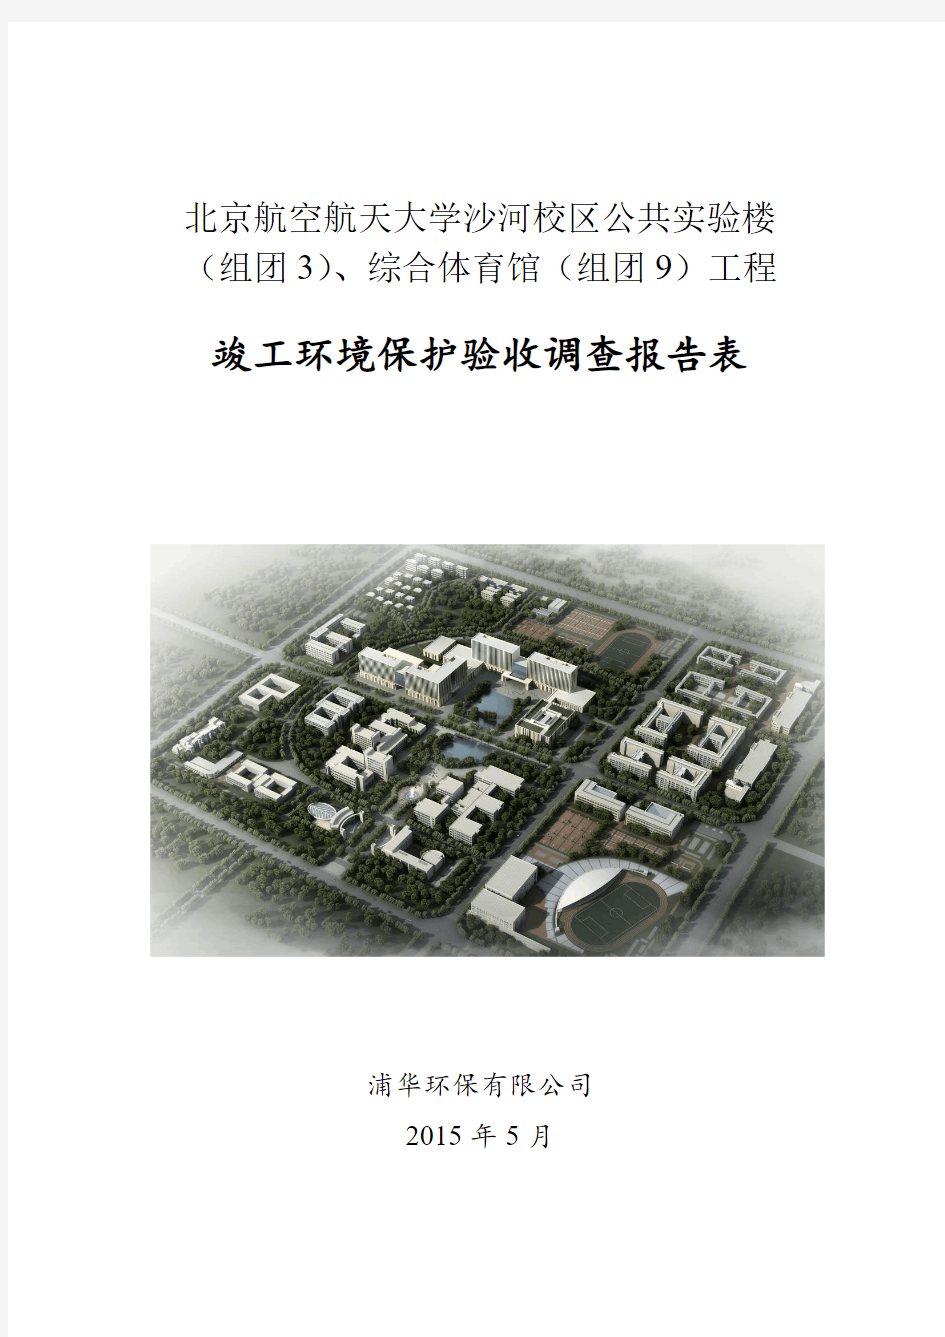 北京航空航天大学沙河校区公共实验楼(组团3)、综合体育馆(组团9)工程项目验收调查